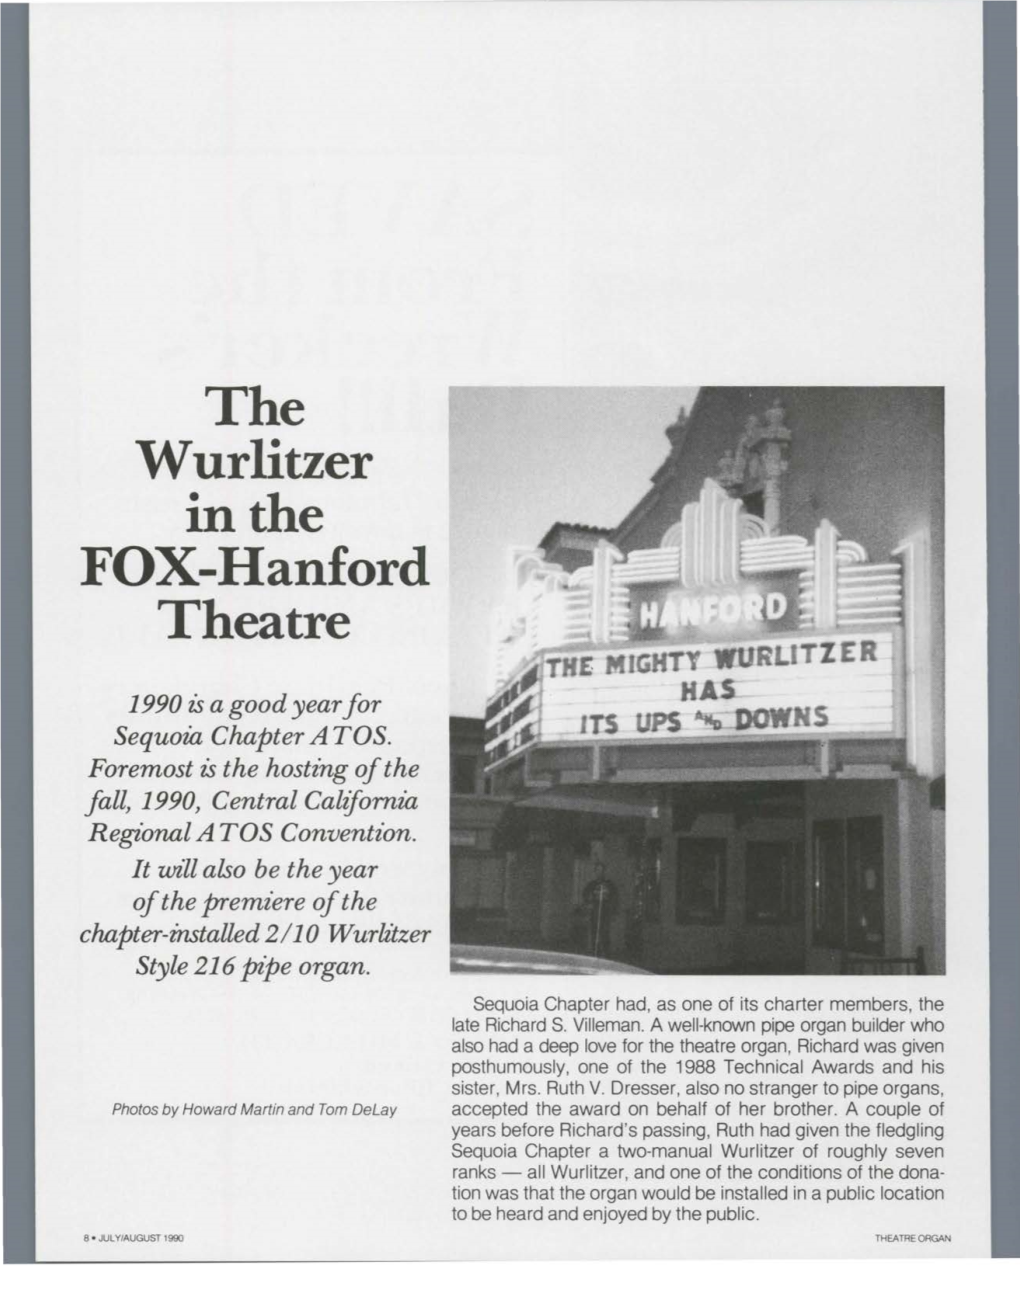 The Wurlitzer in the FOX-Hanford Theatre